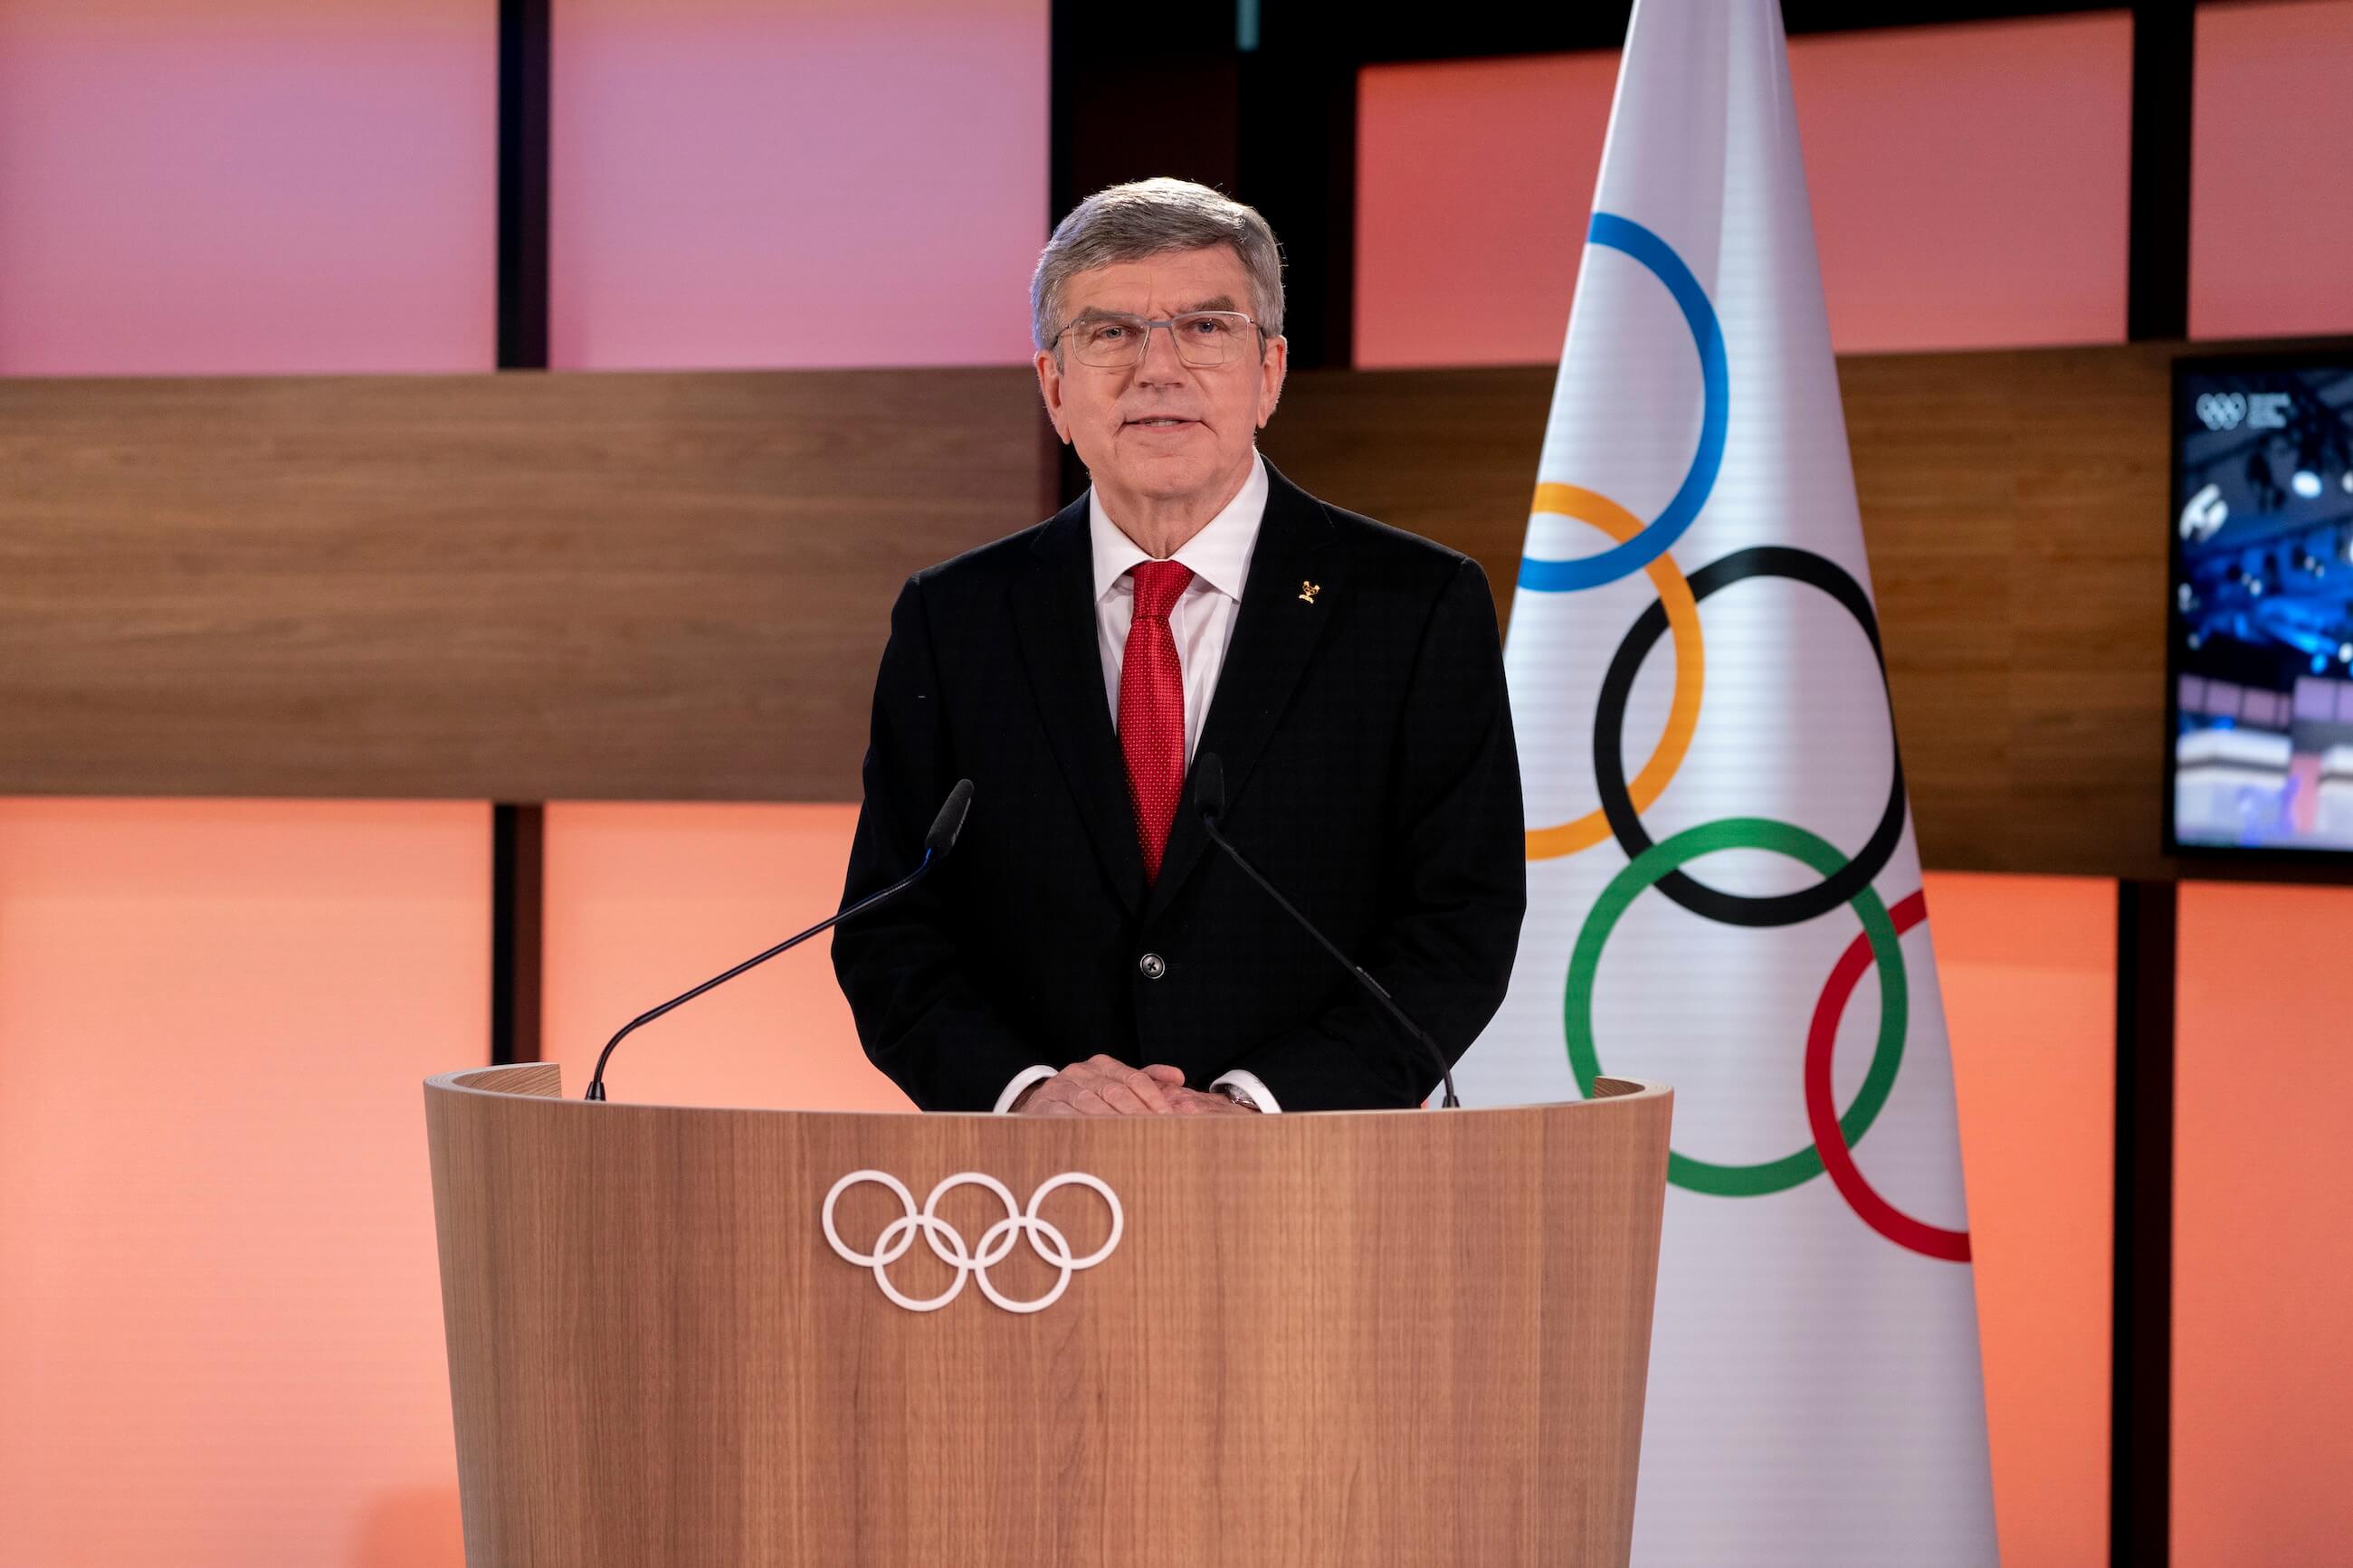 Šef MOK-a rekao je da bi ruski sportisti koji koriste simbol Z mogli biti "kažnjeni"